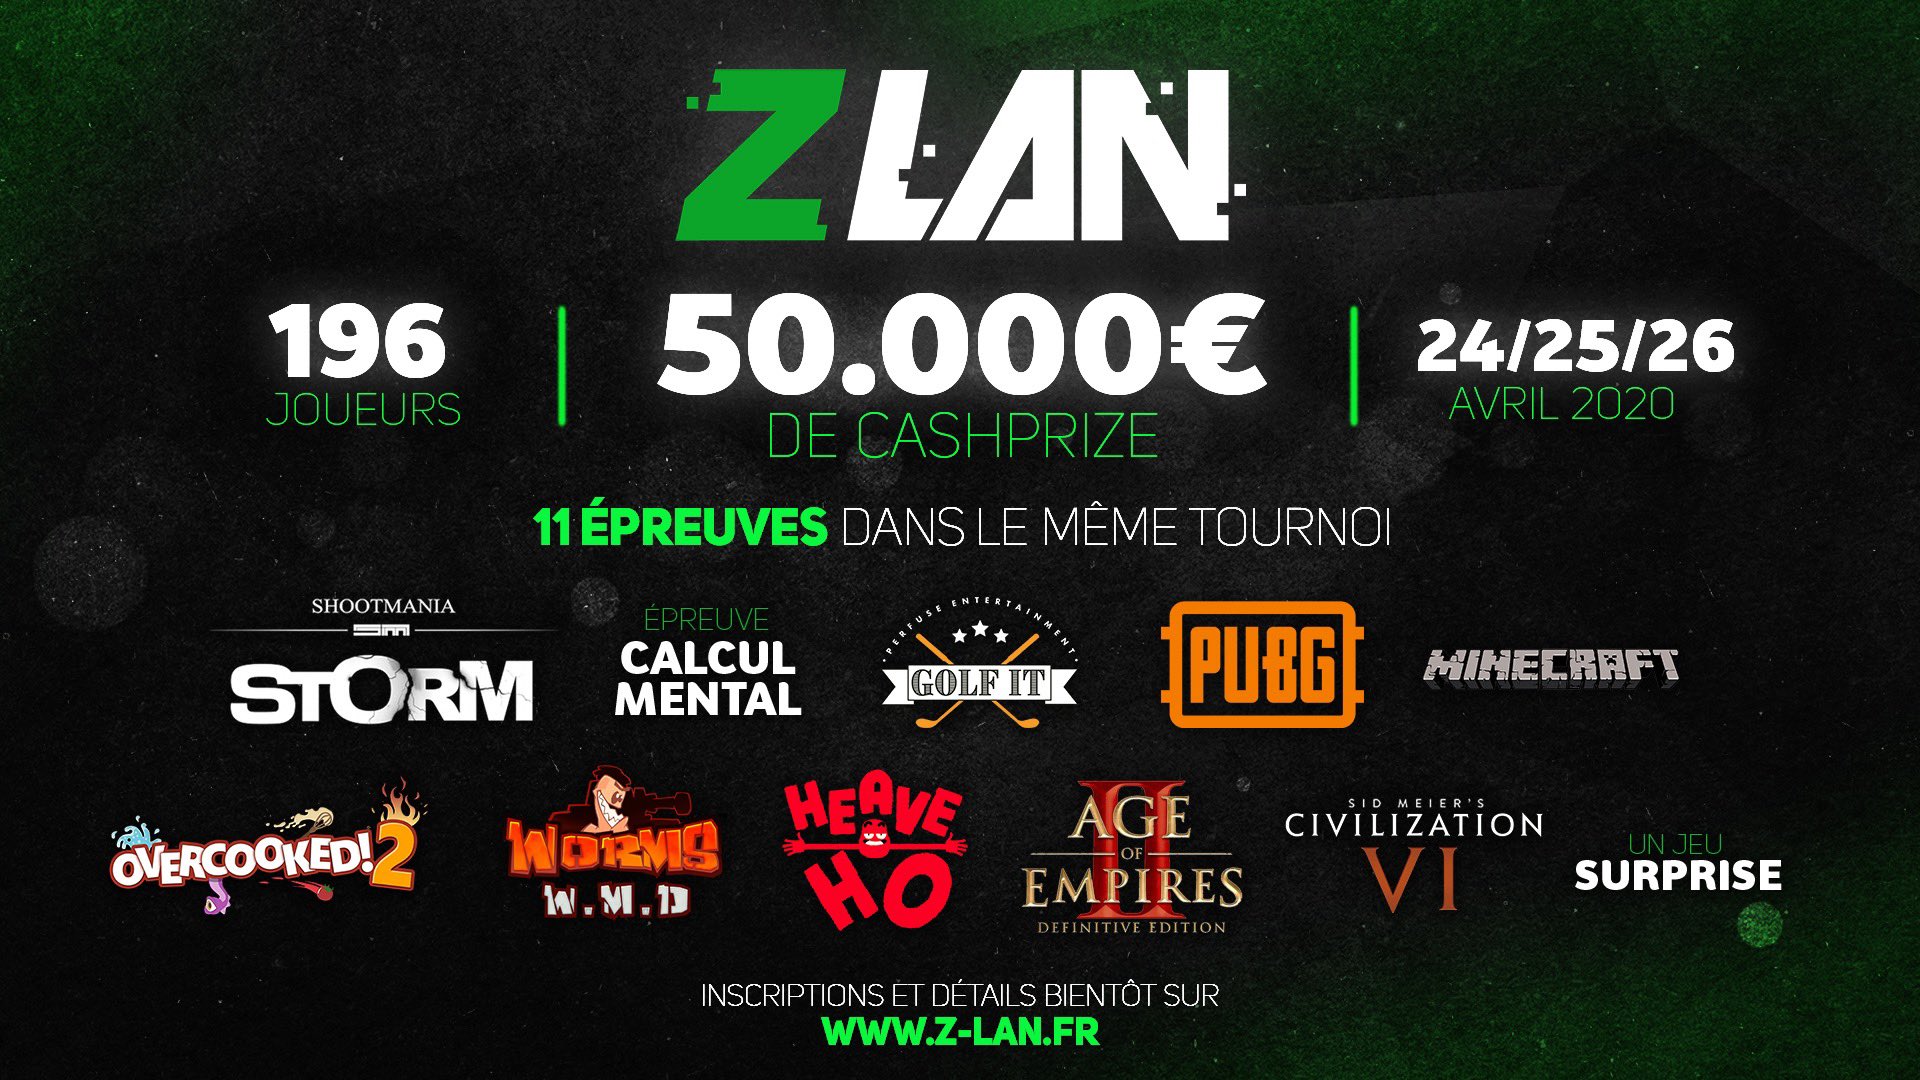 ZLAN : les dates de la seconde édition et le montant du cash prize enfin annoncés !